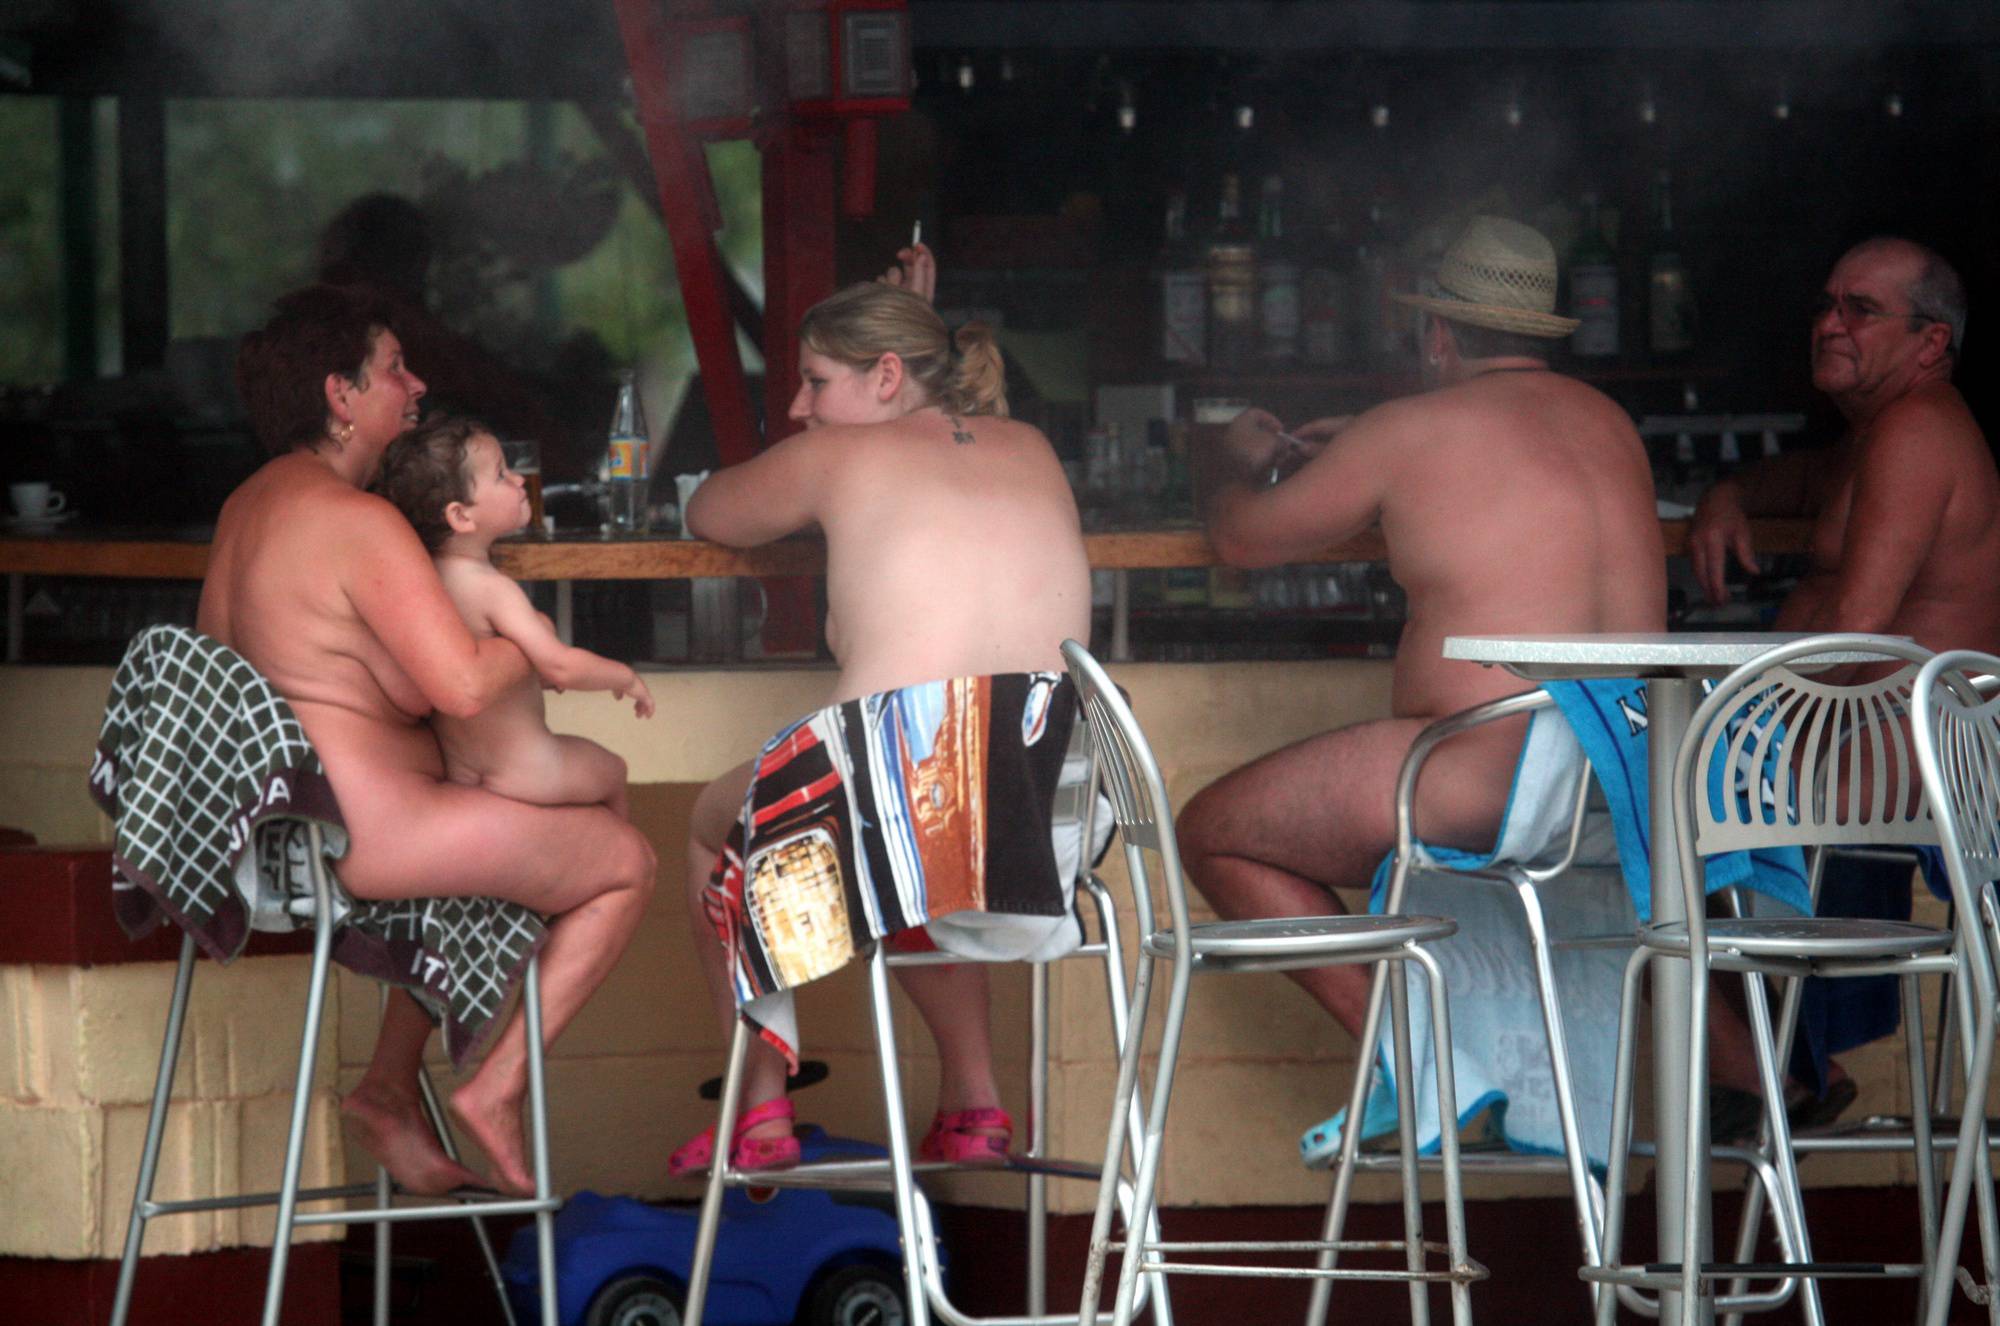 Purenudism Images-Nudist Outdoor Diner View - 2